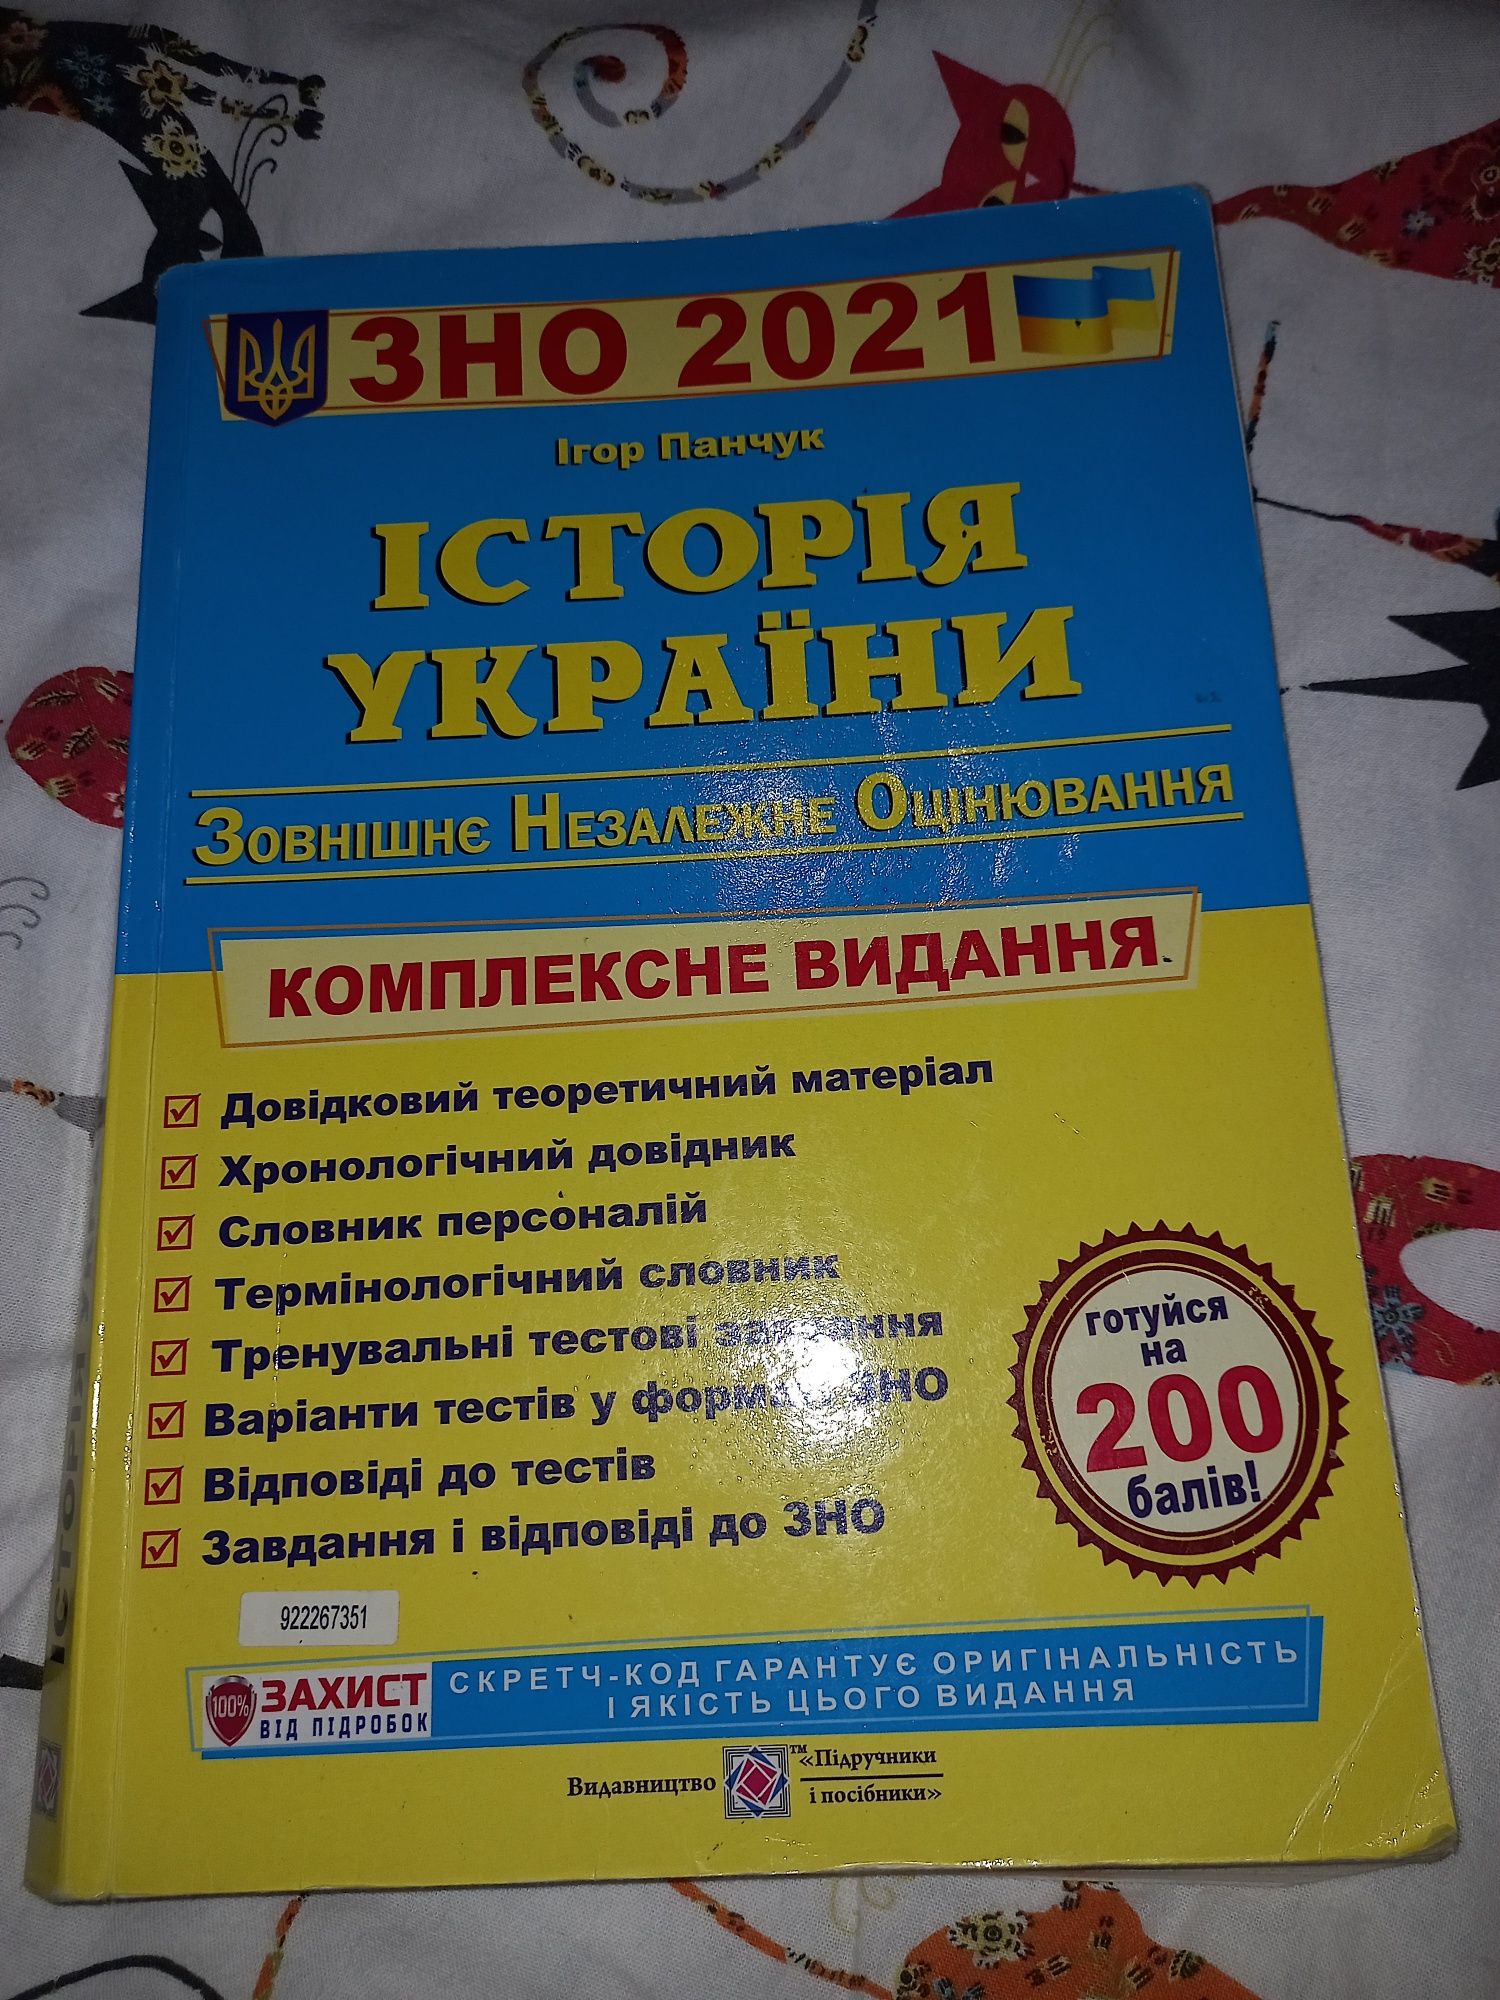 Підручник підготовки до зно Історія України Ігор Панчук 2021